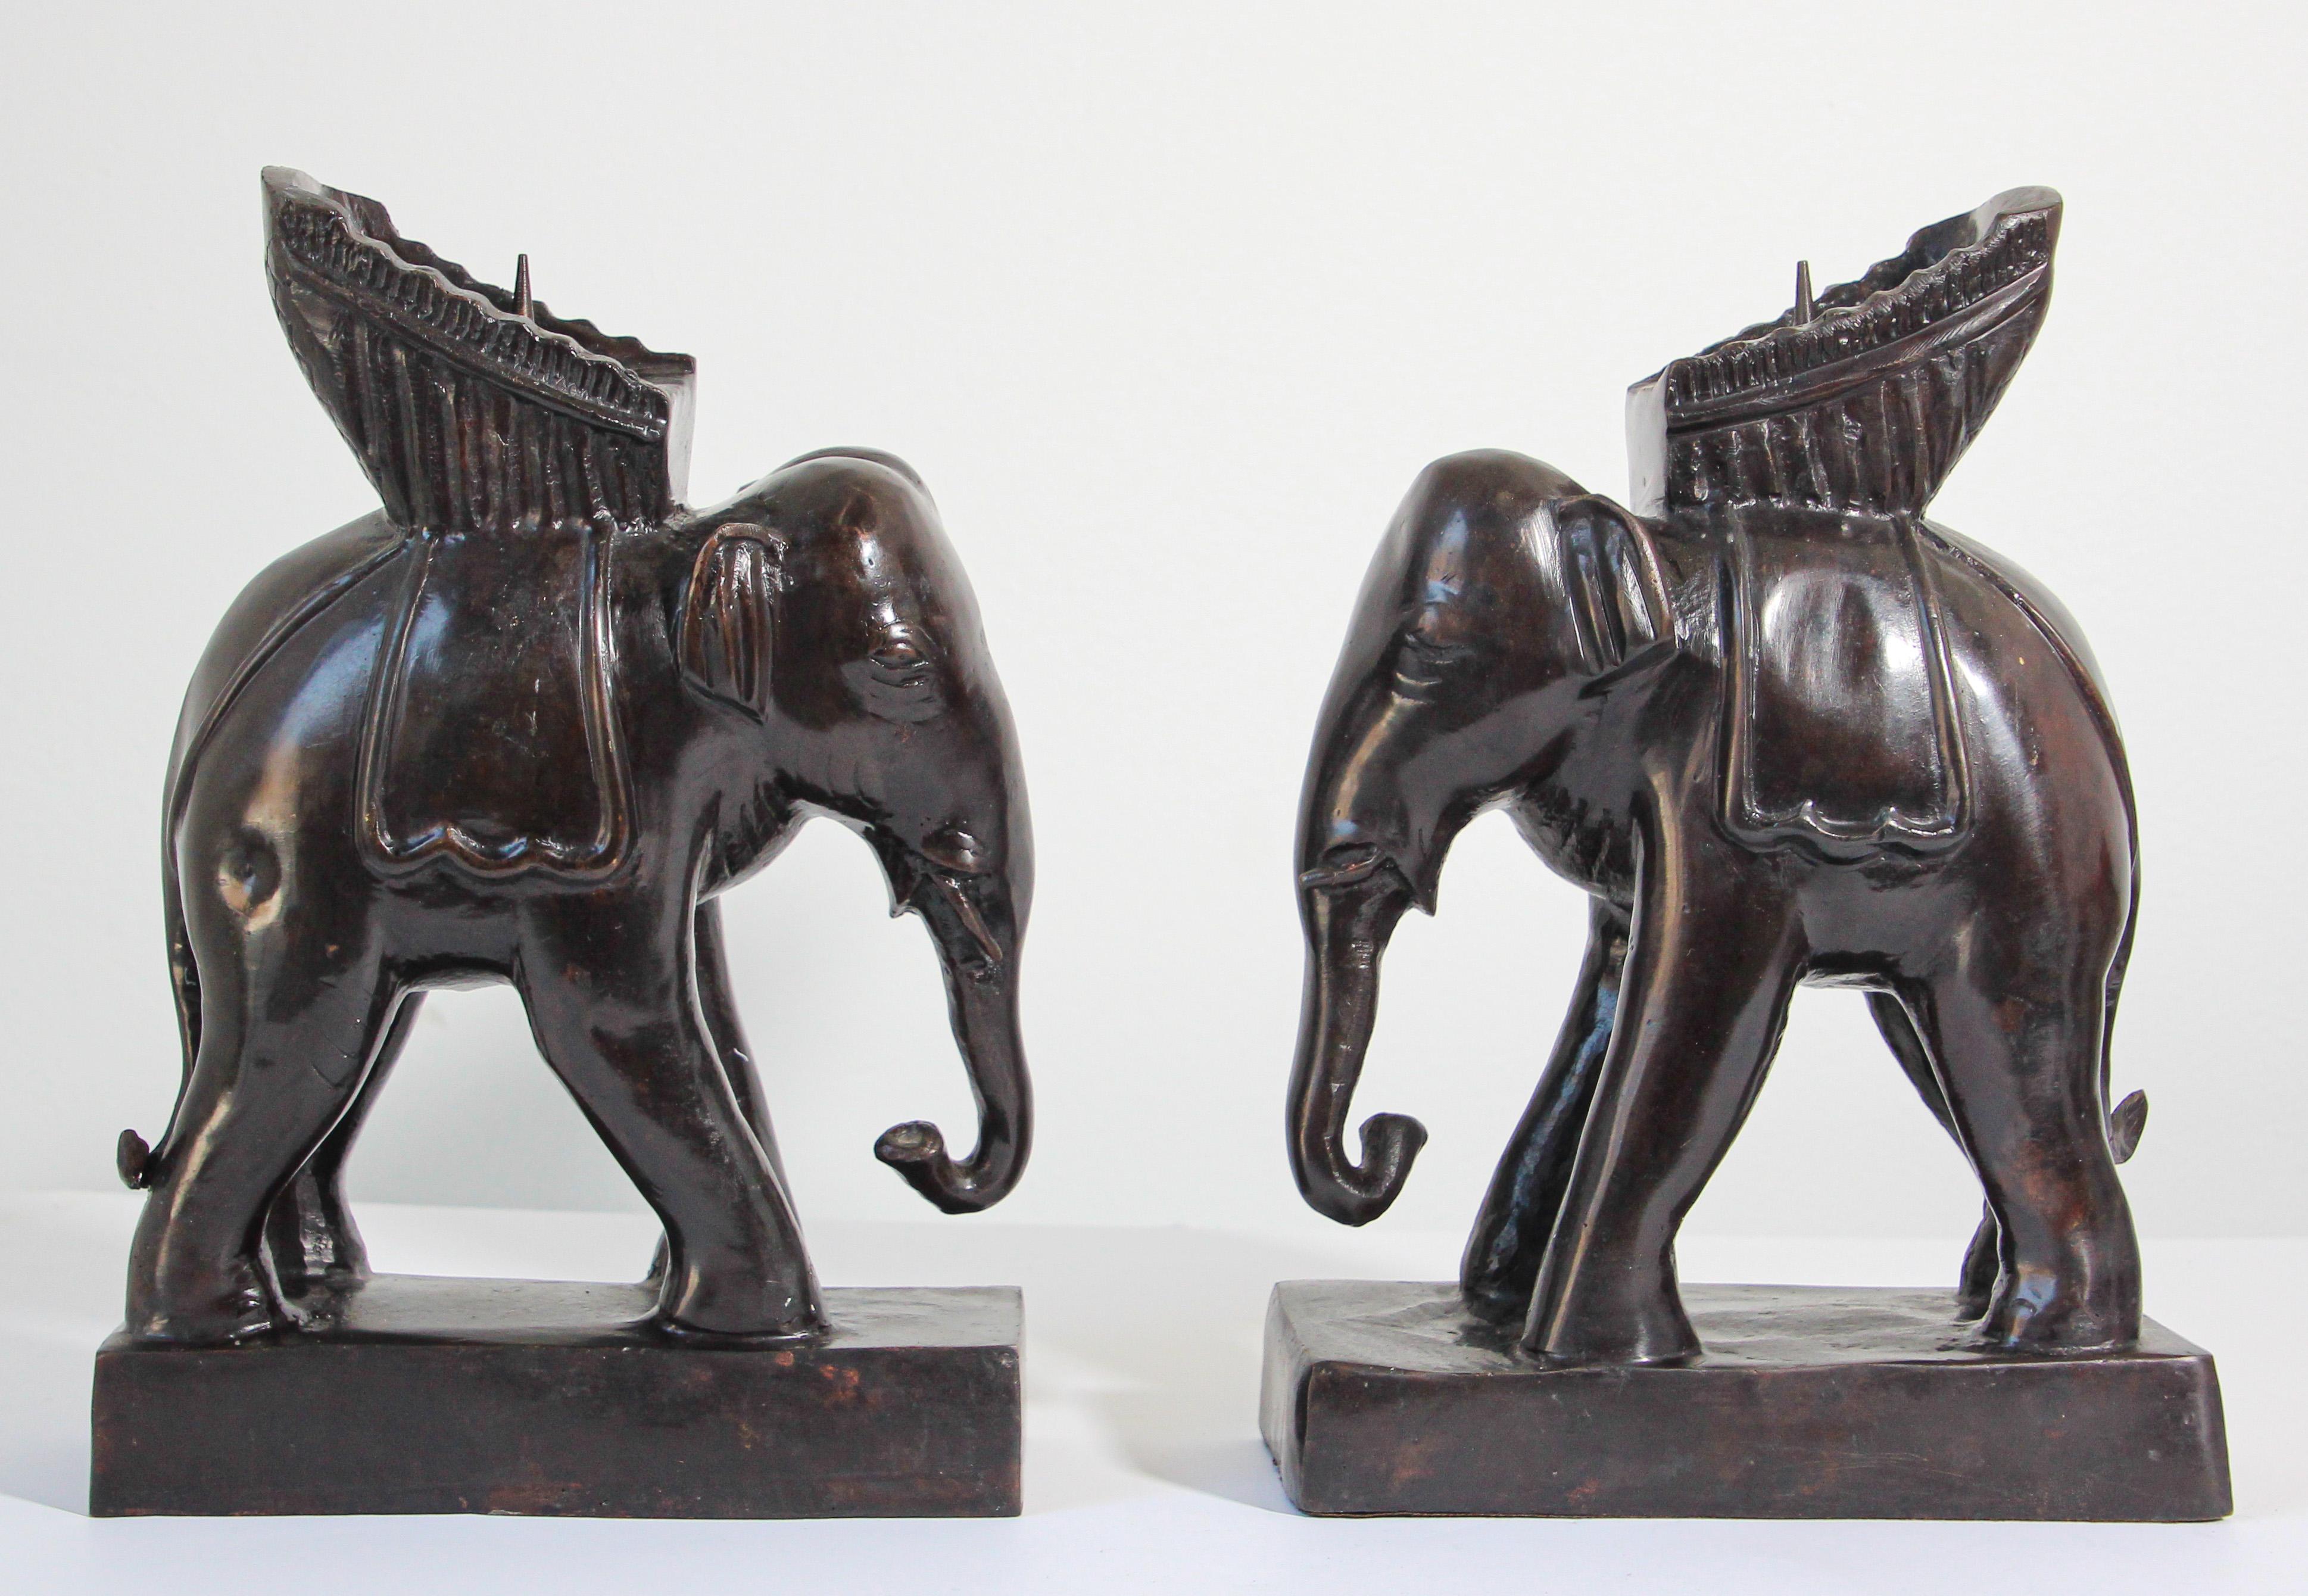 Paire de chandeliers éléphants de Maitland Smith
Paire de chandeliers vintage Maitland-smith en forme d'éléphant en bronze.
Paire de chandeliers éléphants de Maitland Smith, un compliment pour votre table à manger ou console. 
Les éléphants